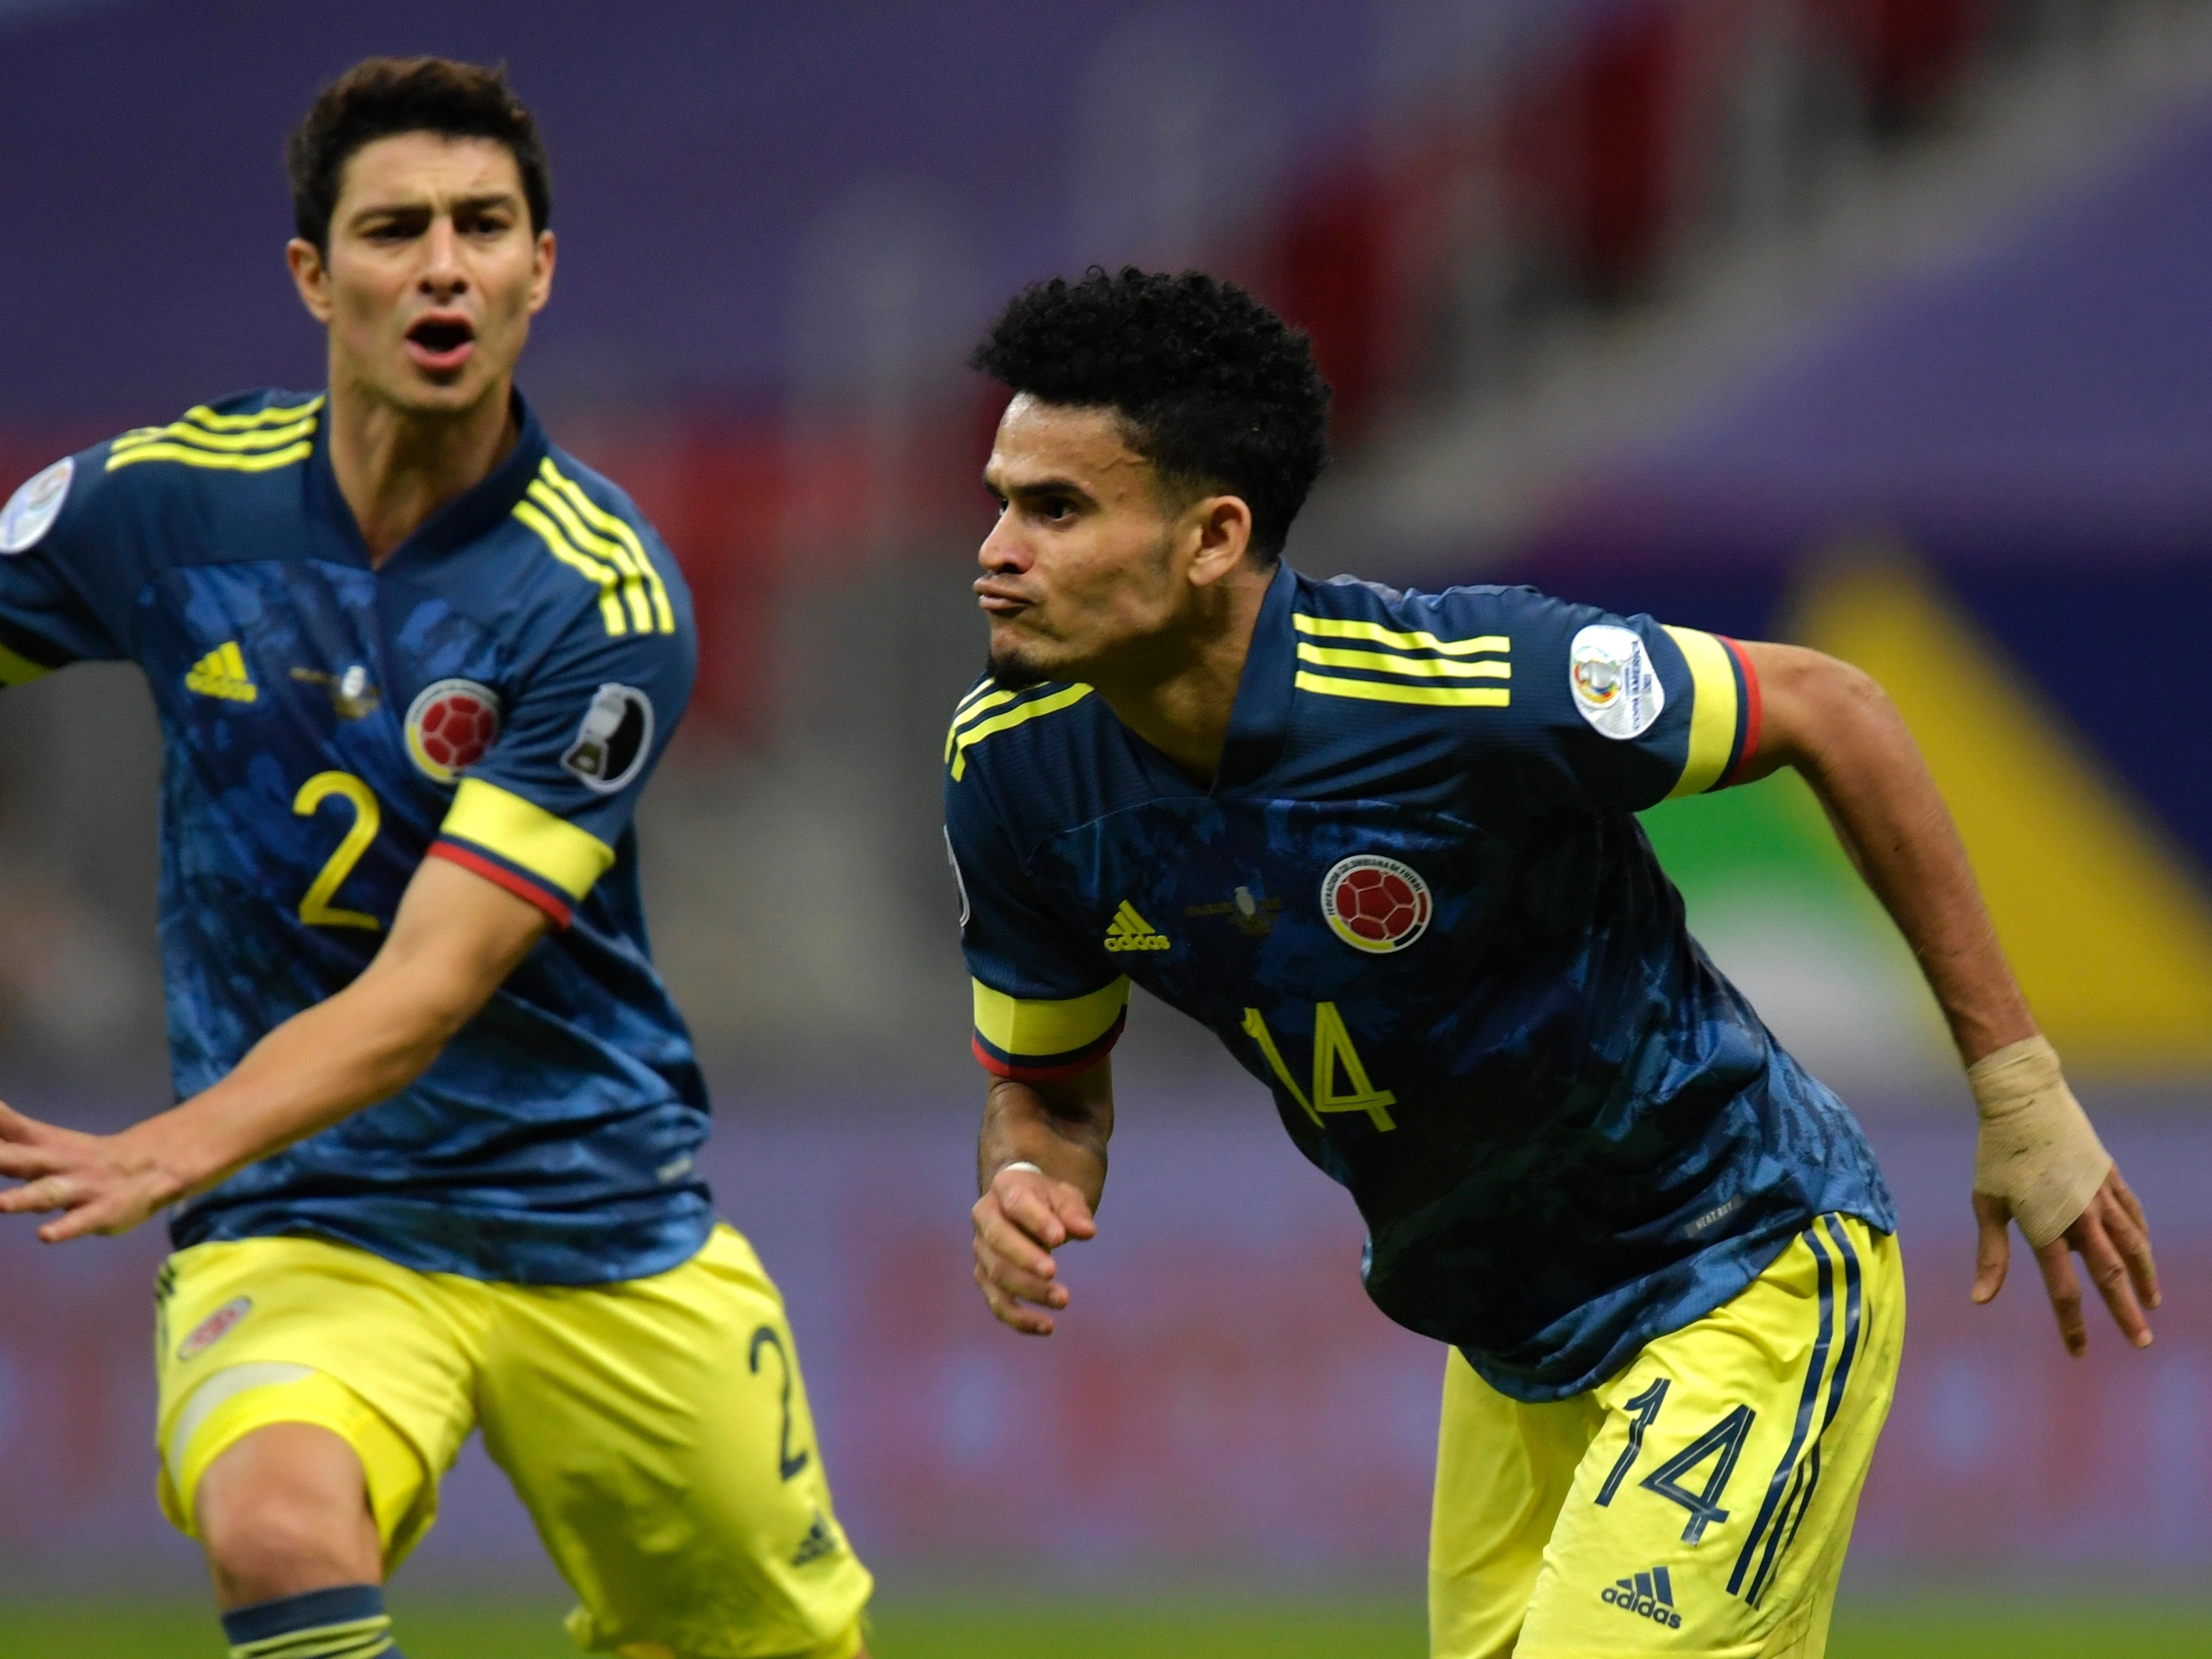 Com golaço no fim, Colômbia vence o Peru e fica em terceiro na Copa América  - 09/07/2021 - UOL Esporte